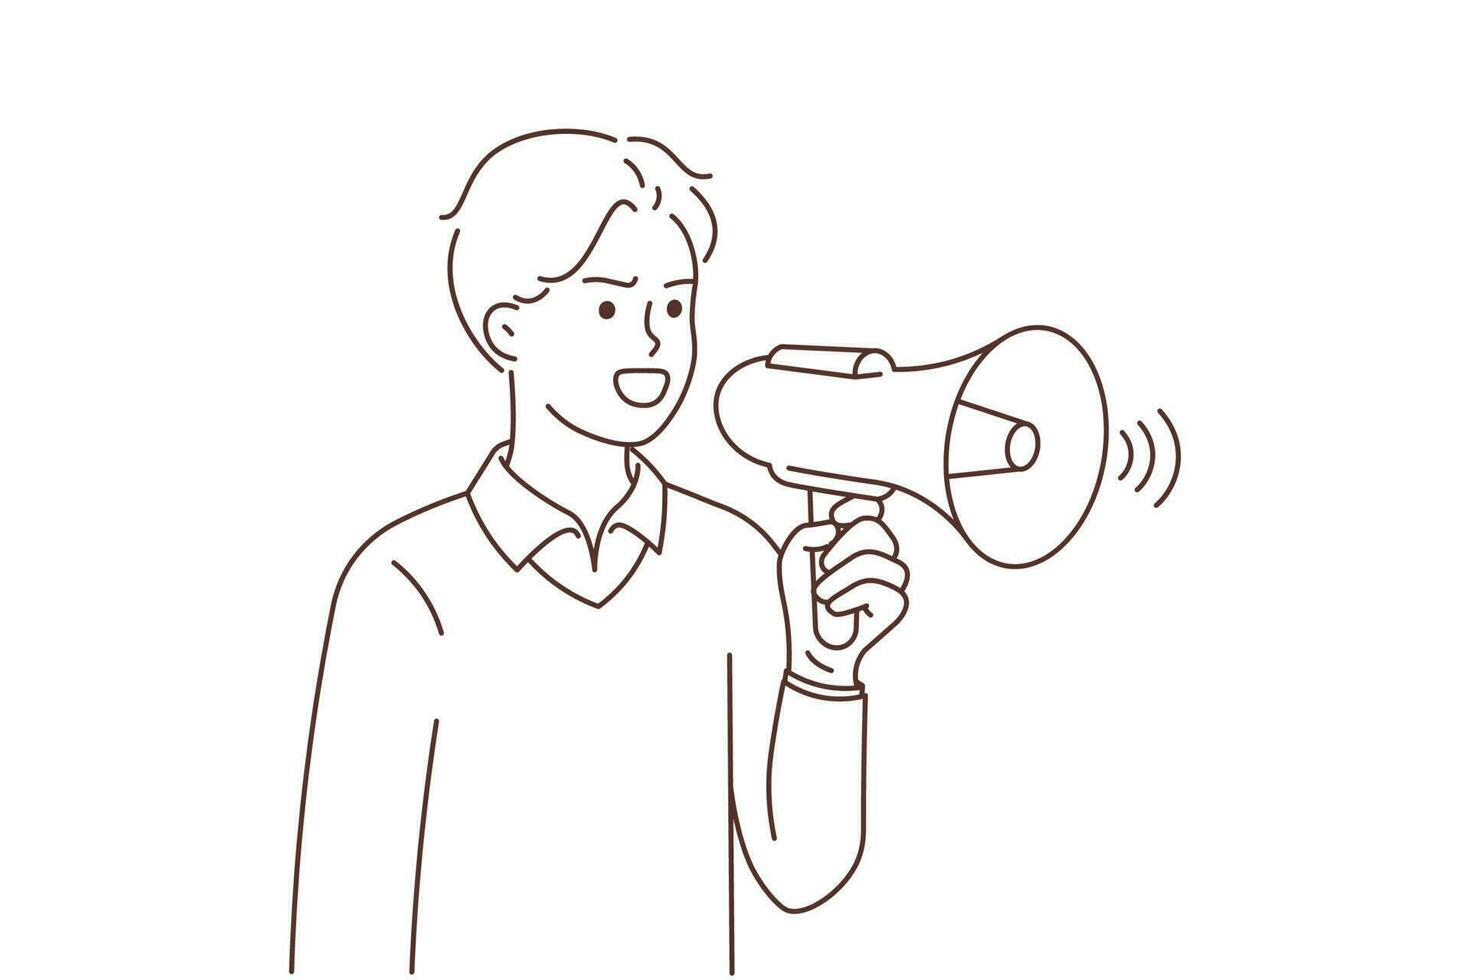 jong Mens met luidspreker schreeuw Aan protest of demonstratie. woedend zakenman roepen in megafoon spreken luid naar publiek. vector illustratie.